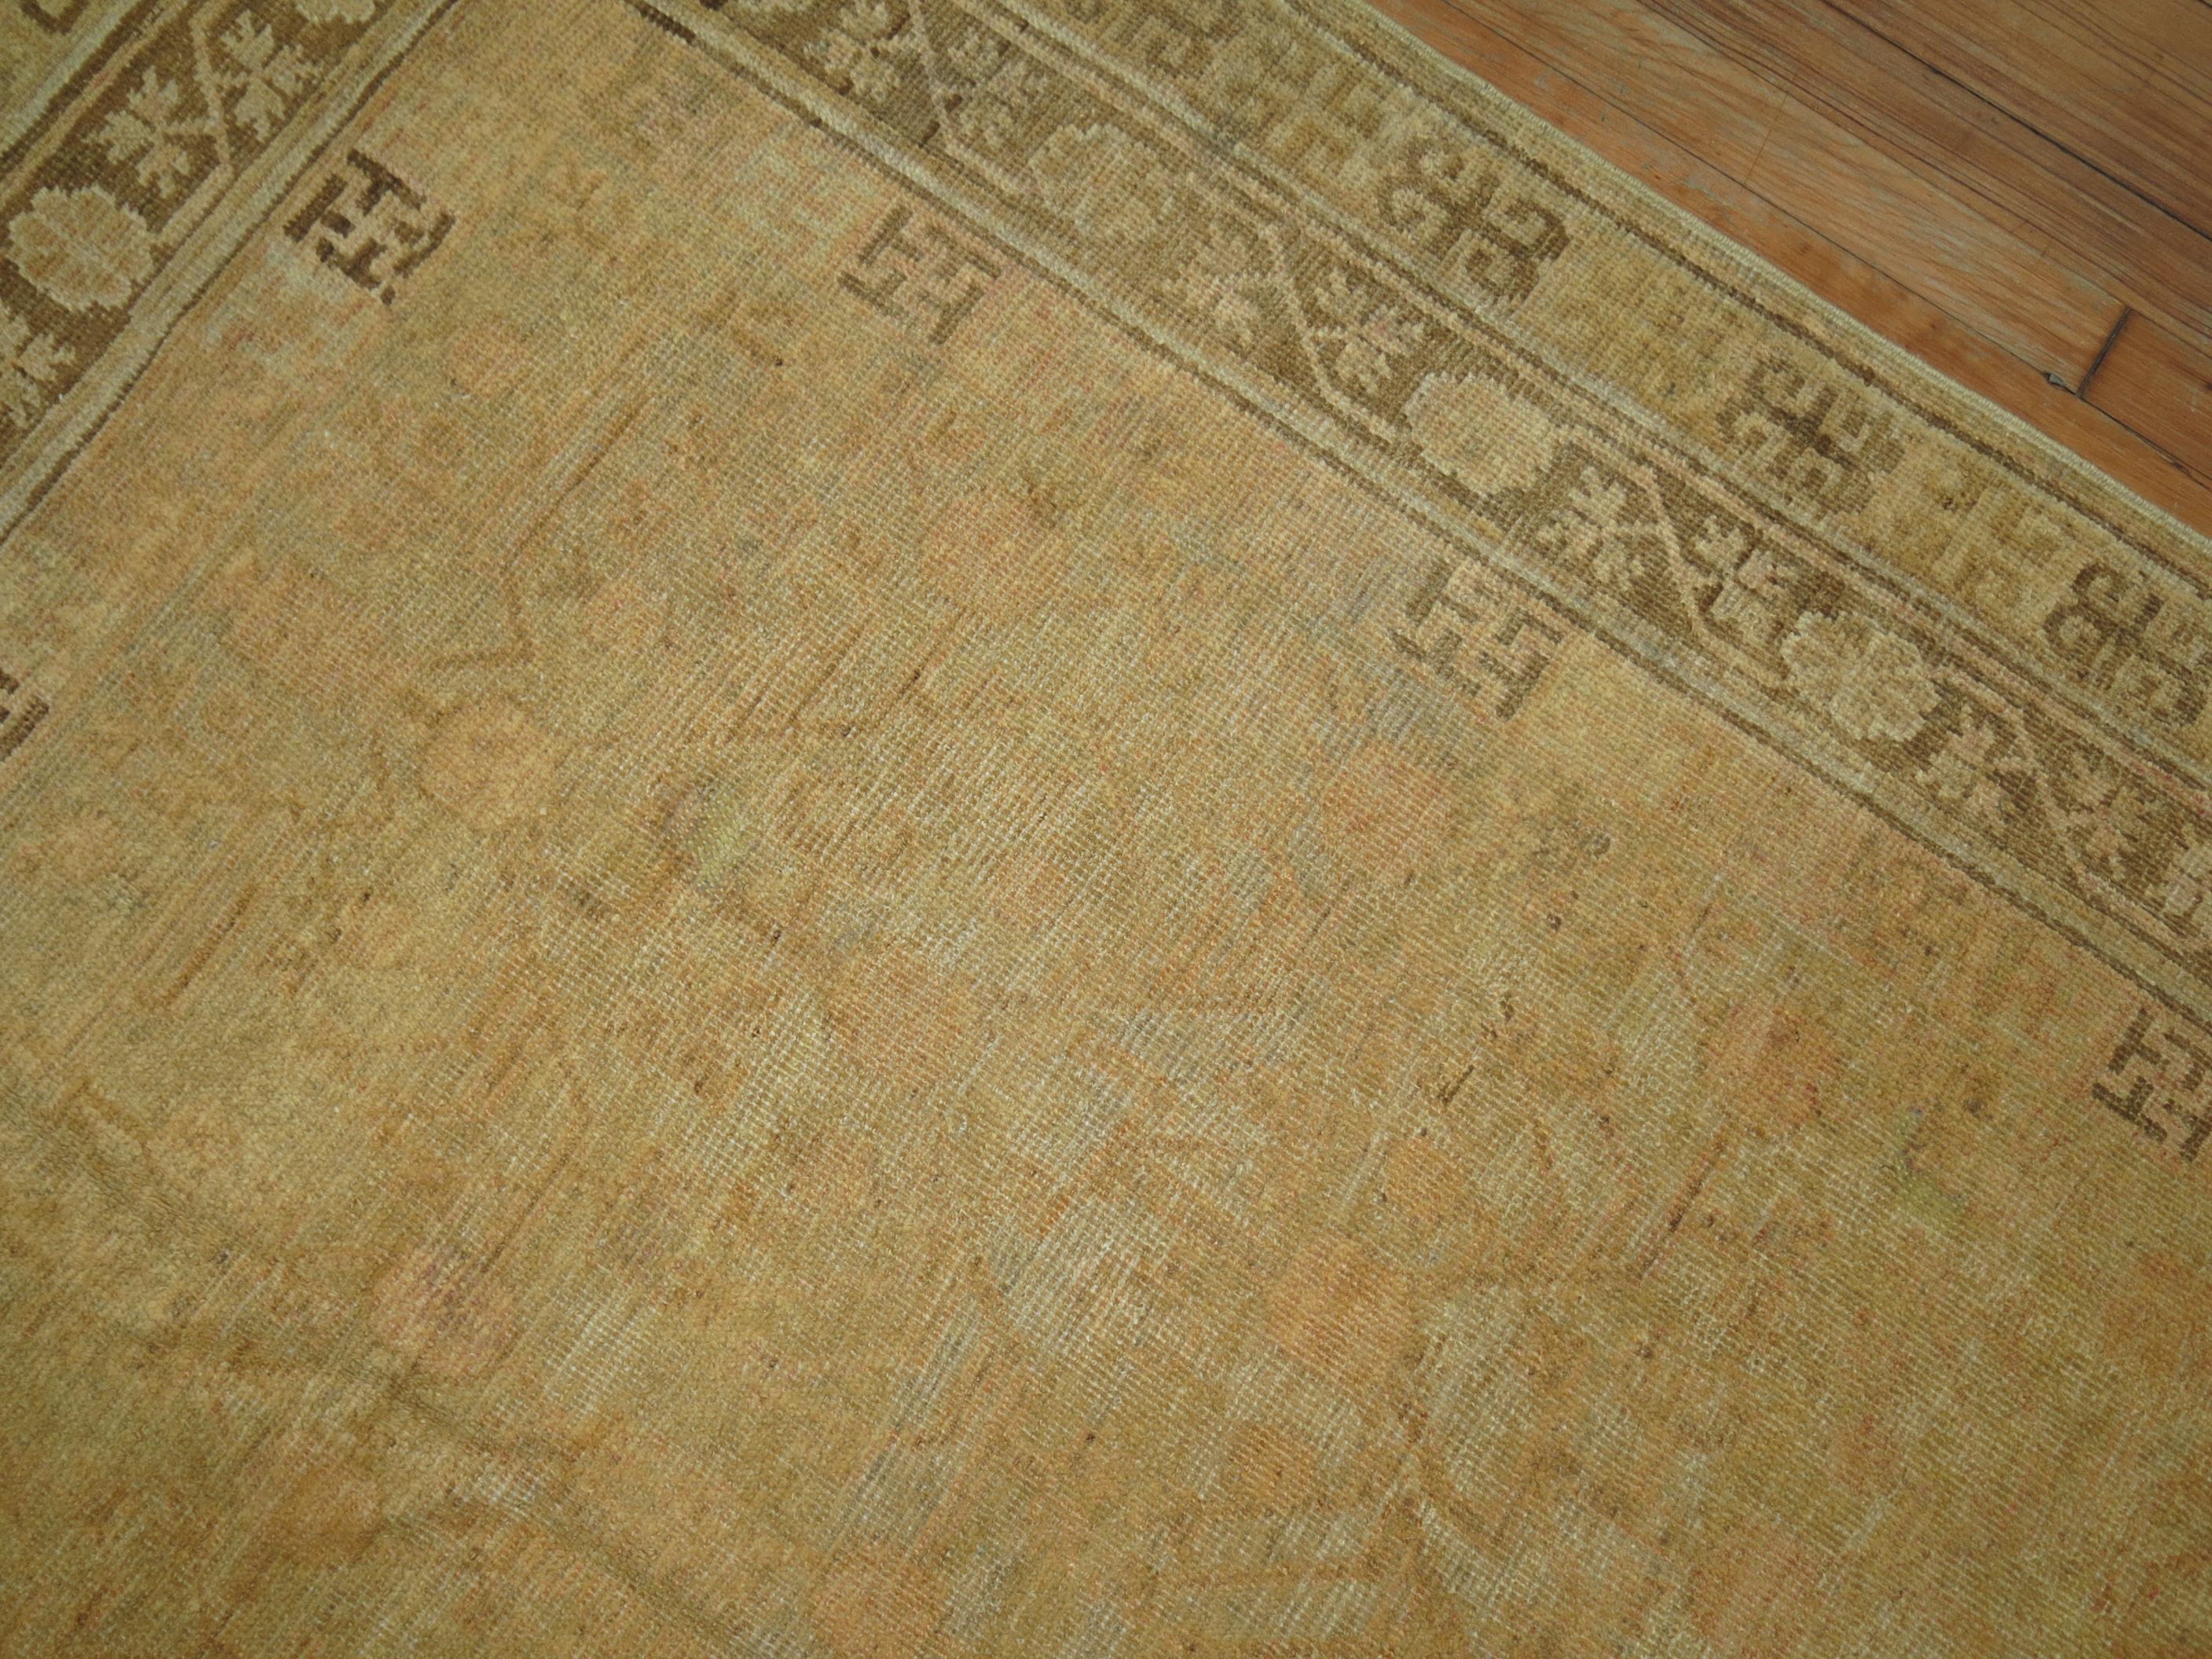 Wool Khotan Carpet in Pale Colors